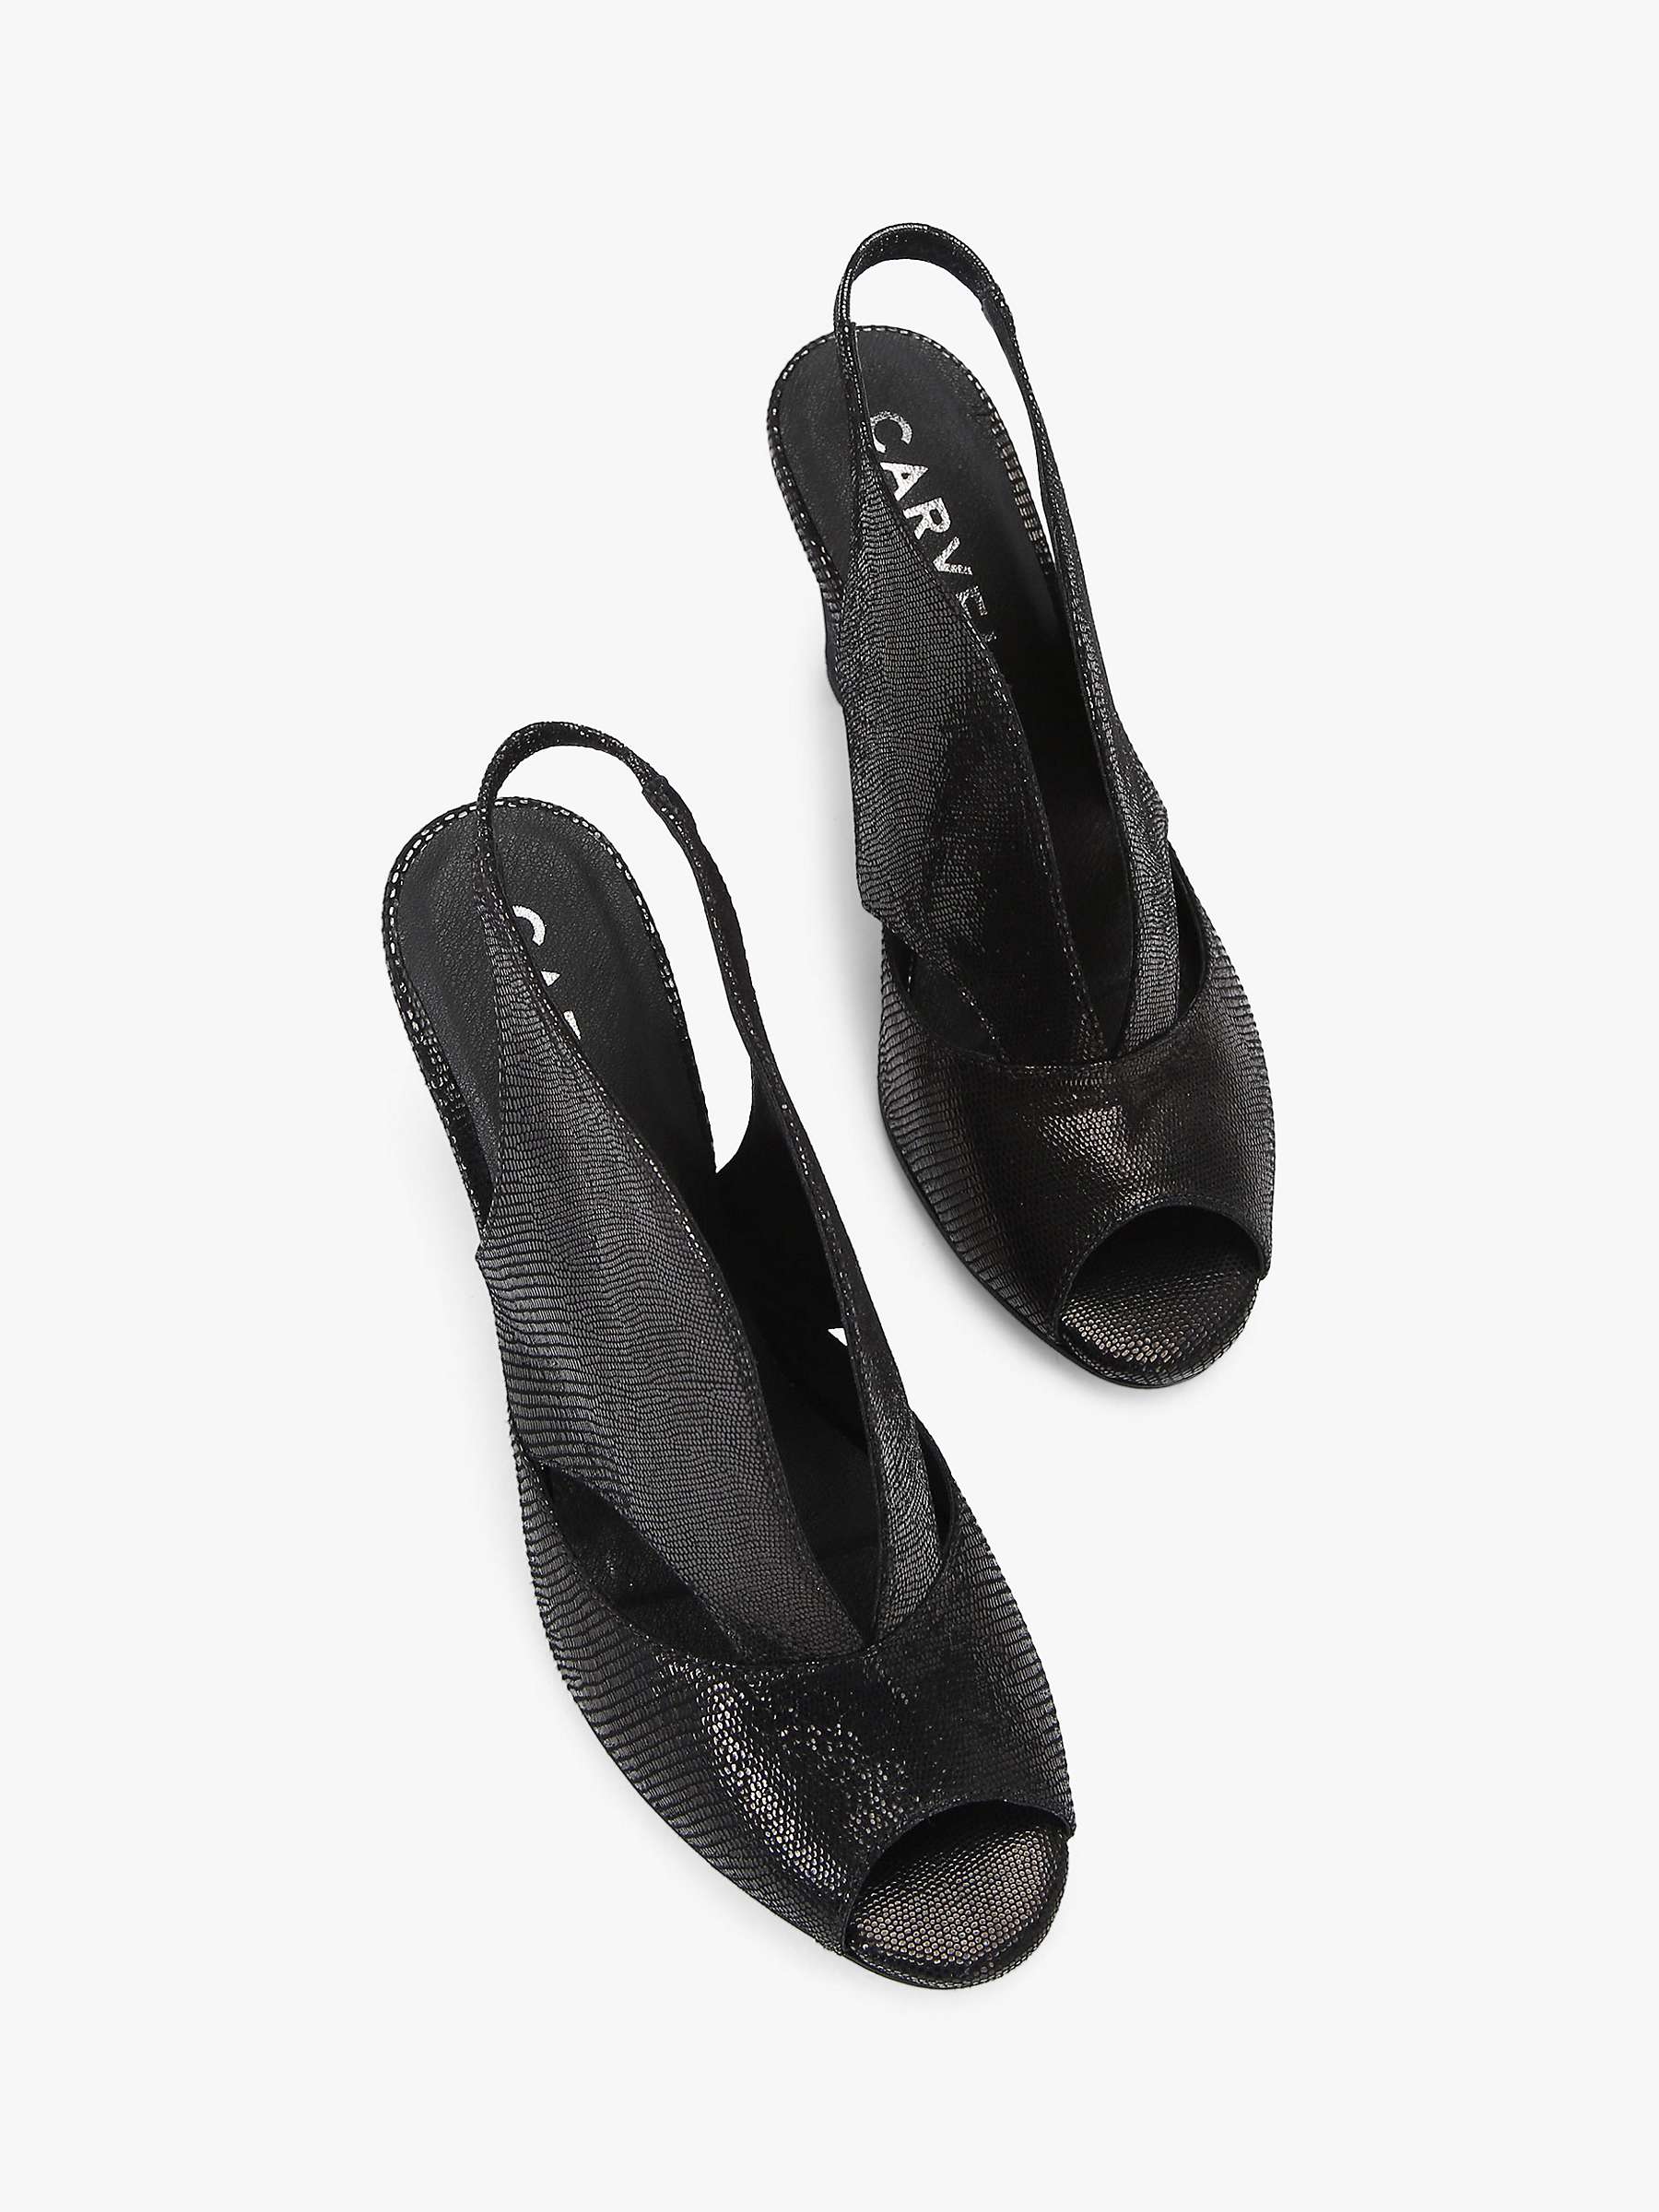 Buy Carvela Arabella Snakeskin Effect Leather Open Toe Court Shoes, Black Online at johnlewis.com